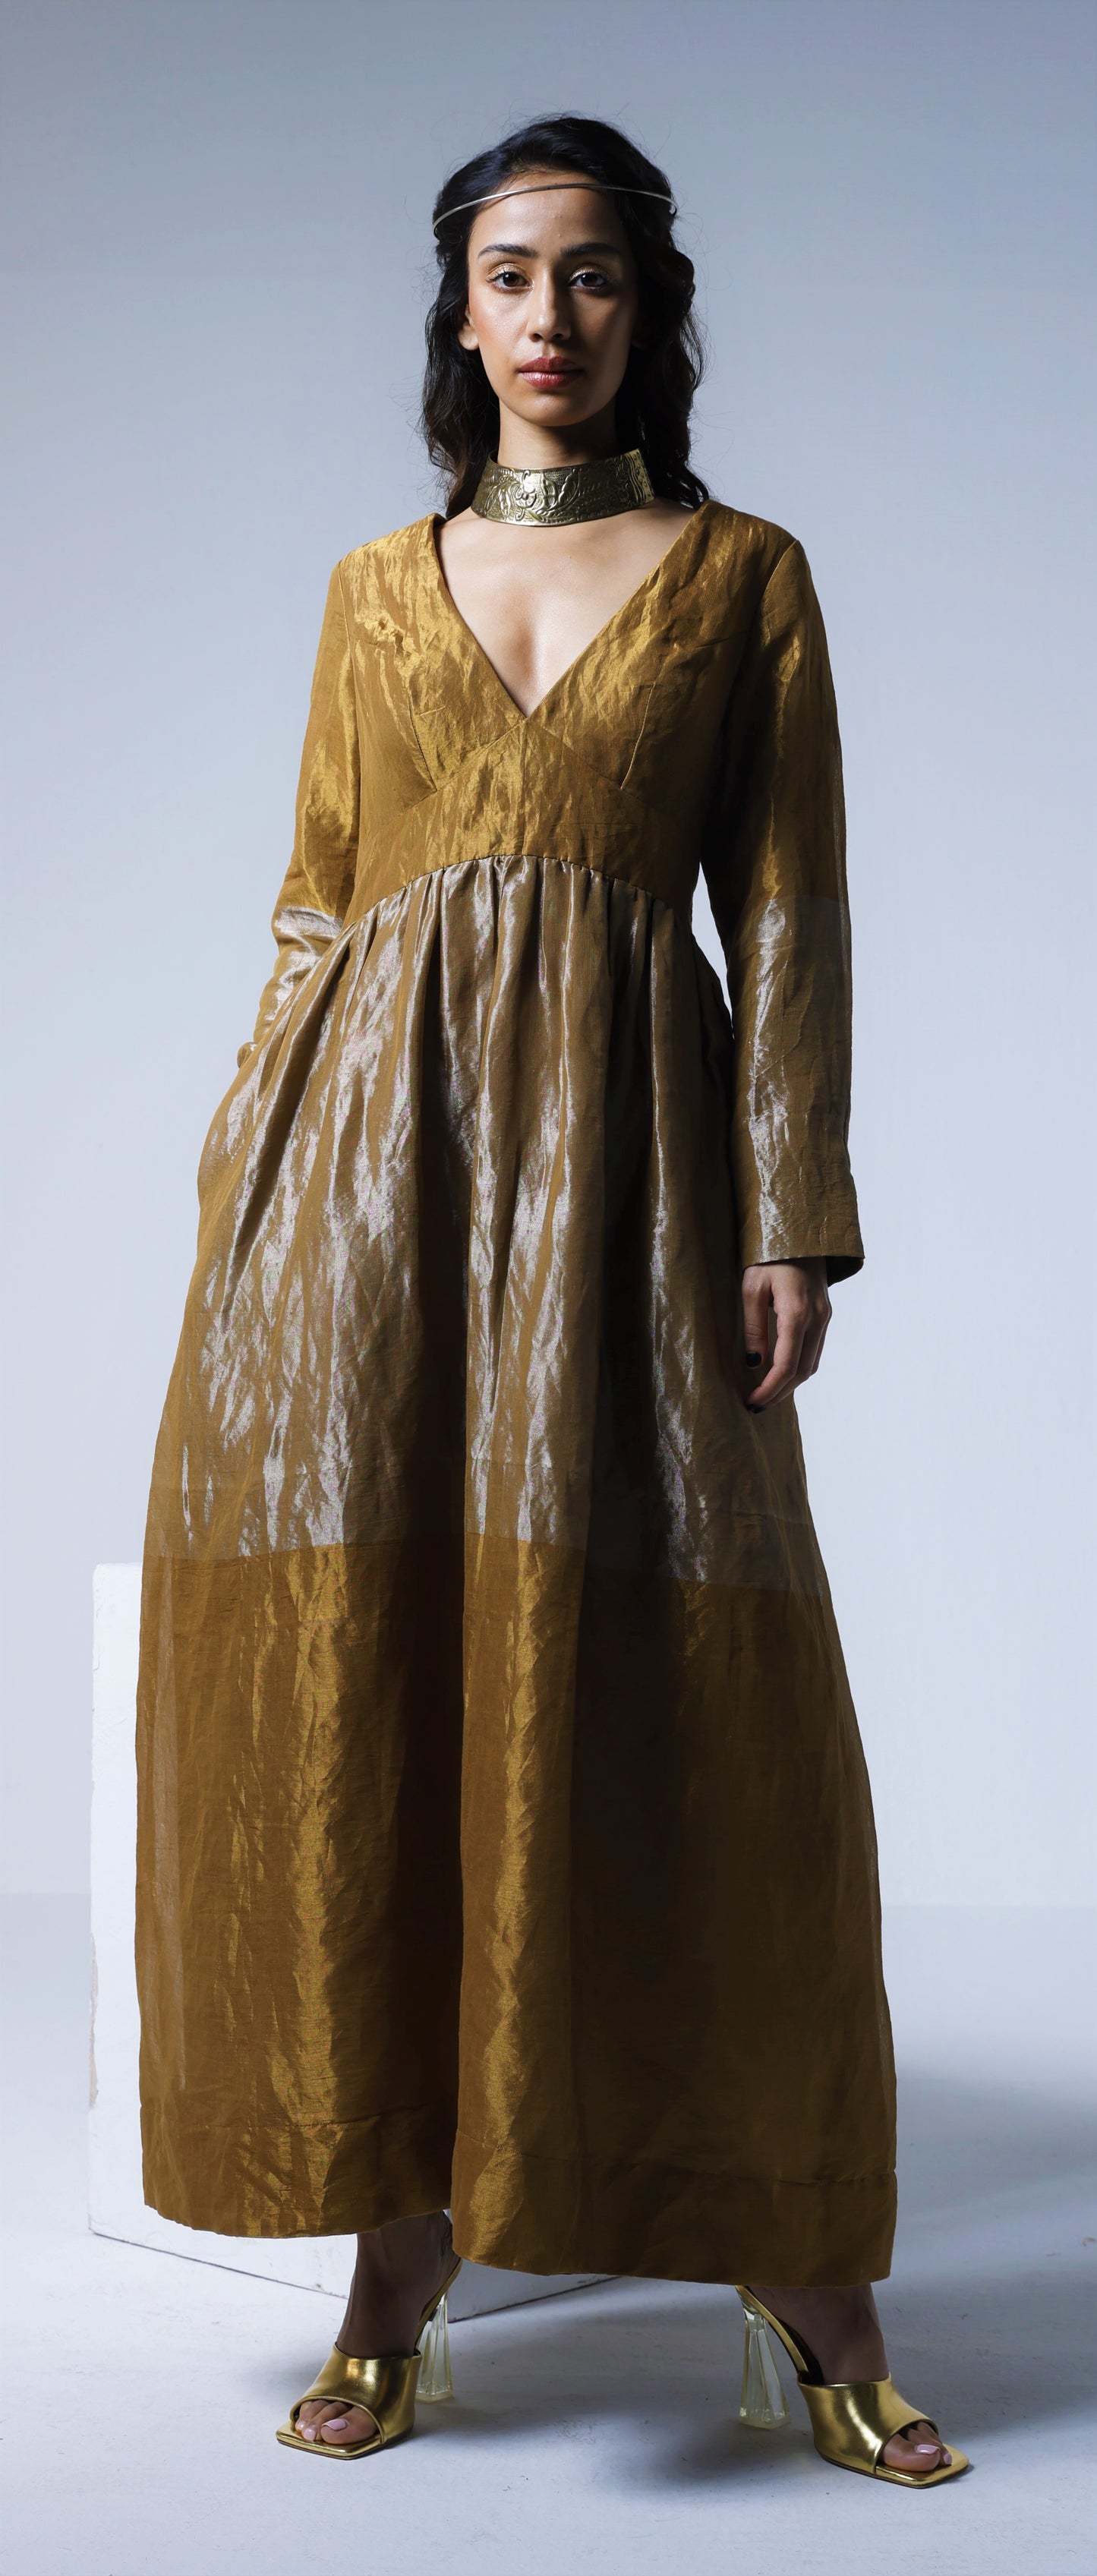 Maxi dress in Half & Half Copper gold & silver Tissue